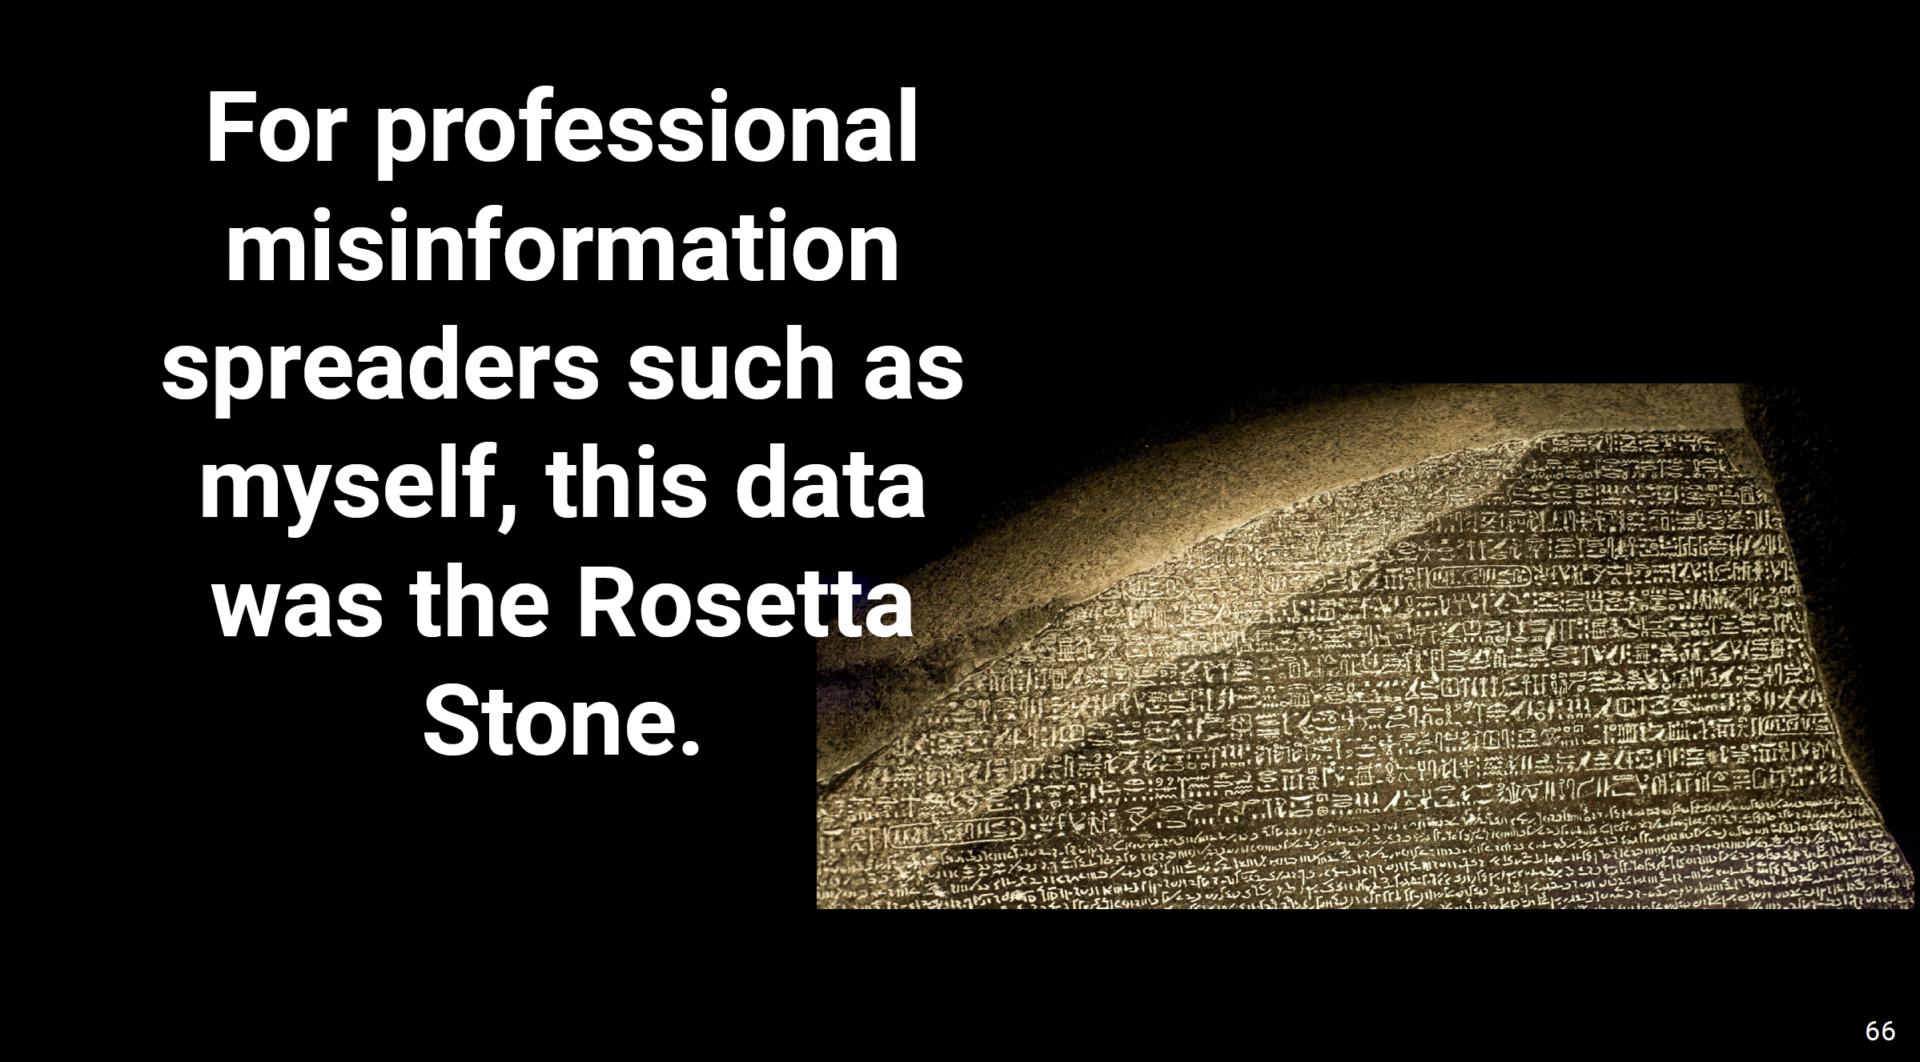 Steve Kirsch's Rosetta Stone